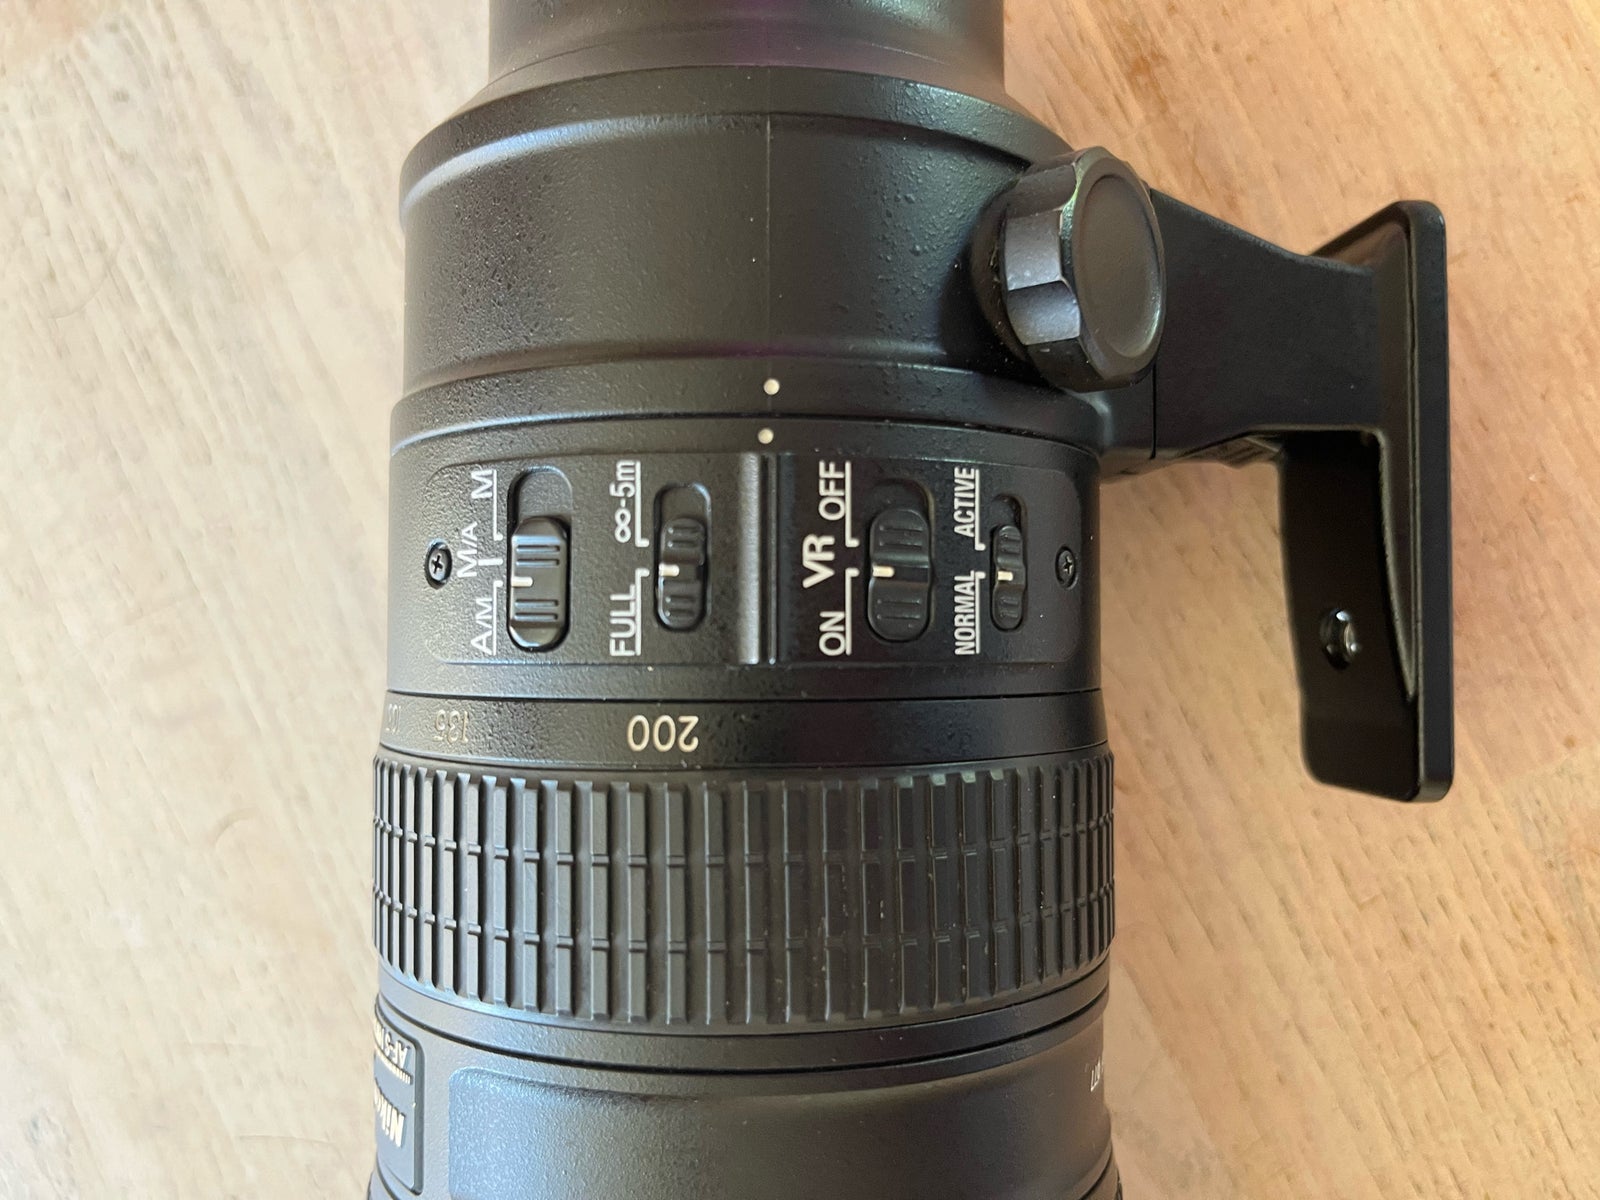 Zoom, Nikon, AF-S Nikkor 70-200mm 1:2.8Gll ED